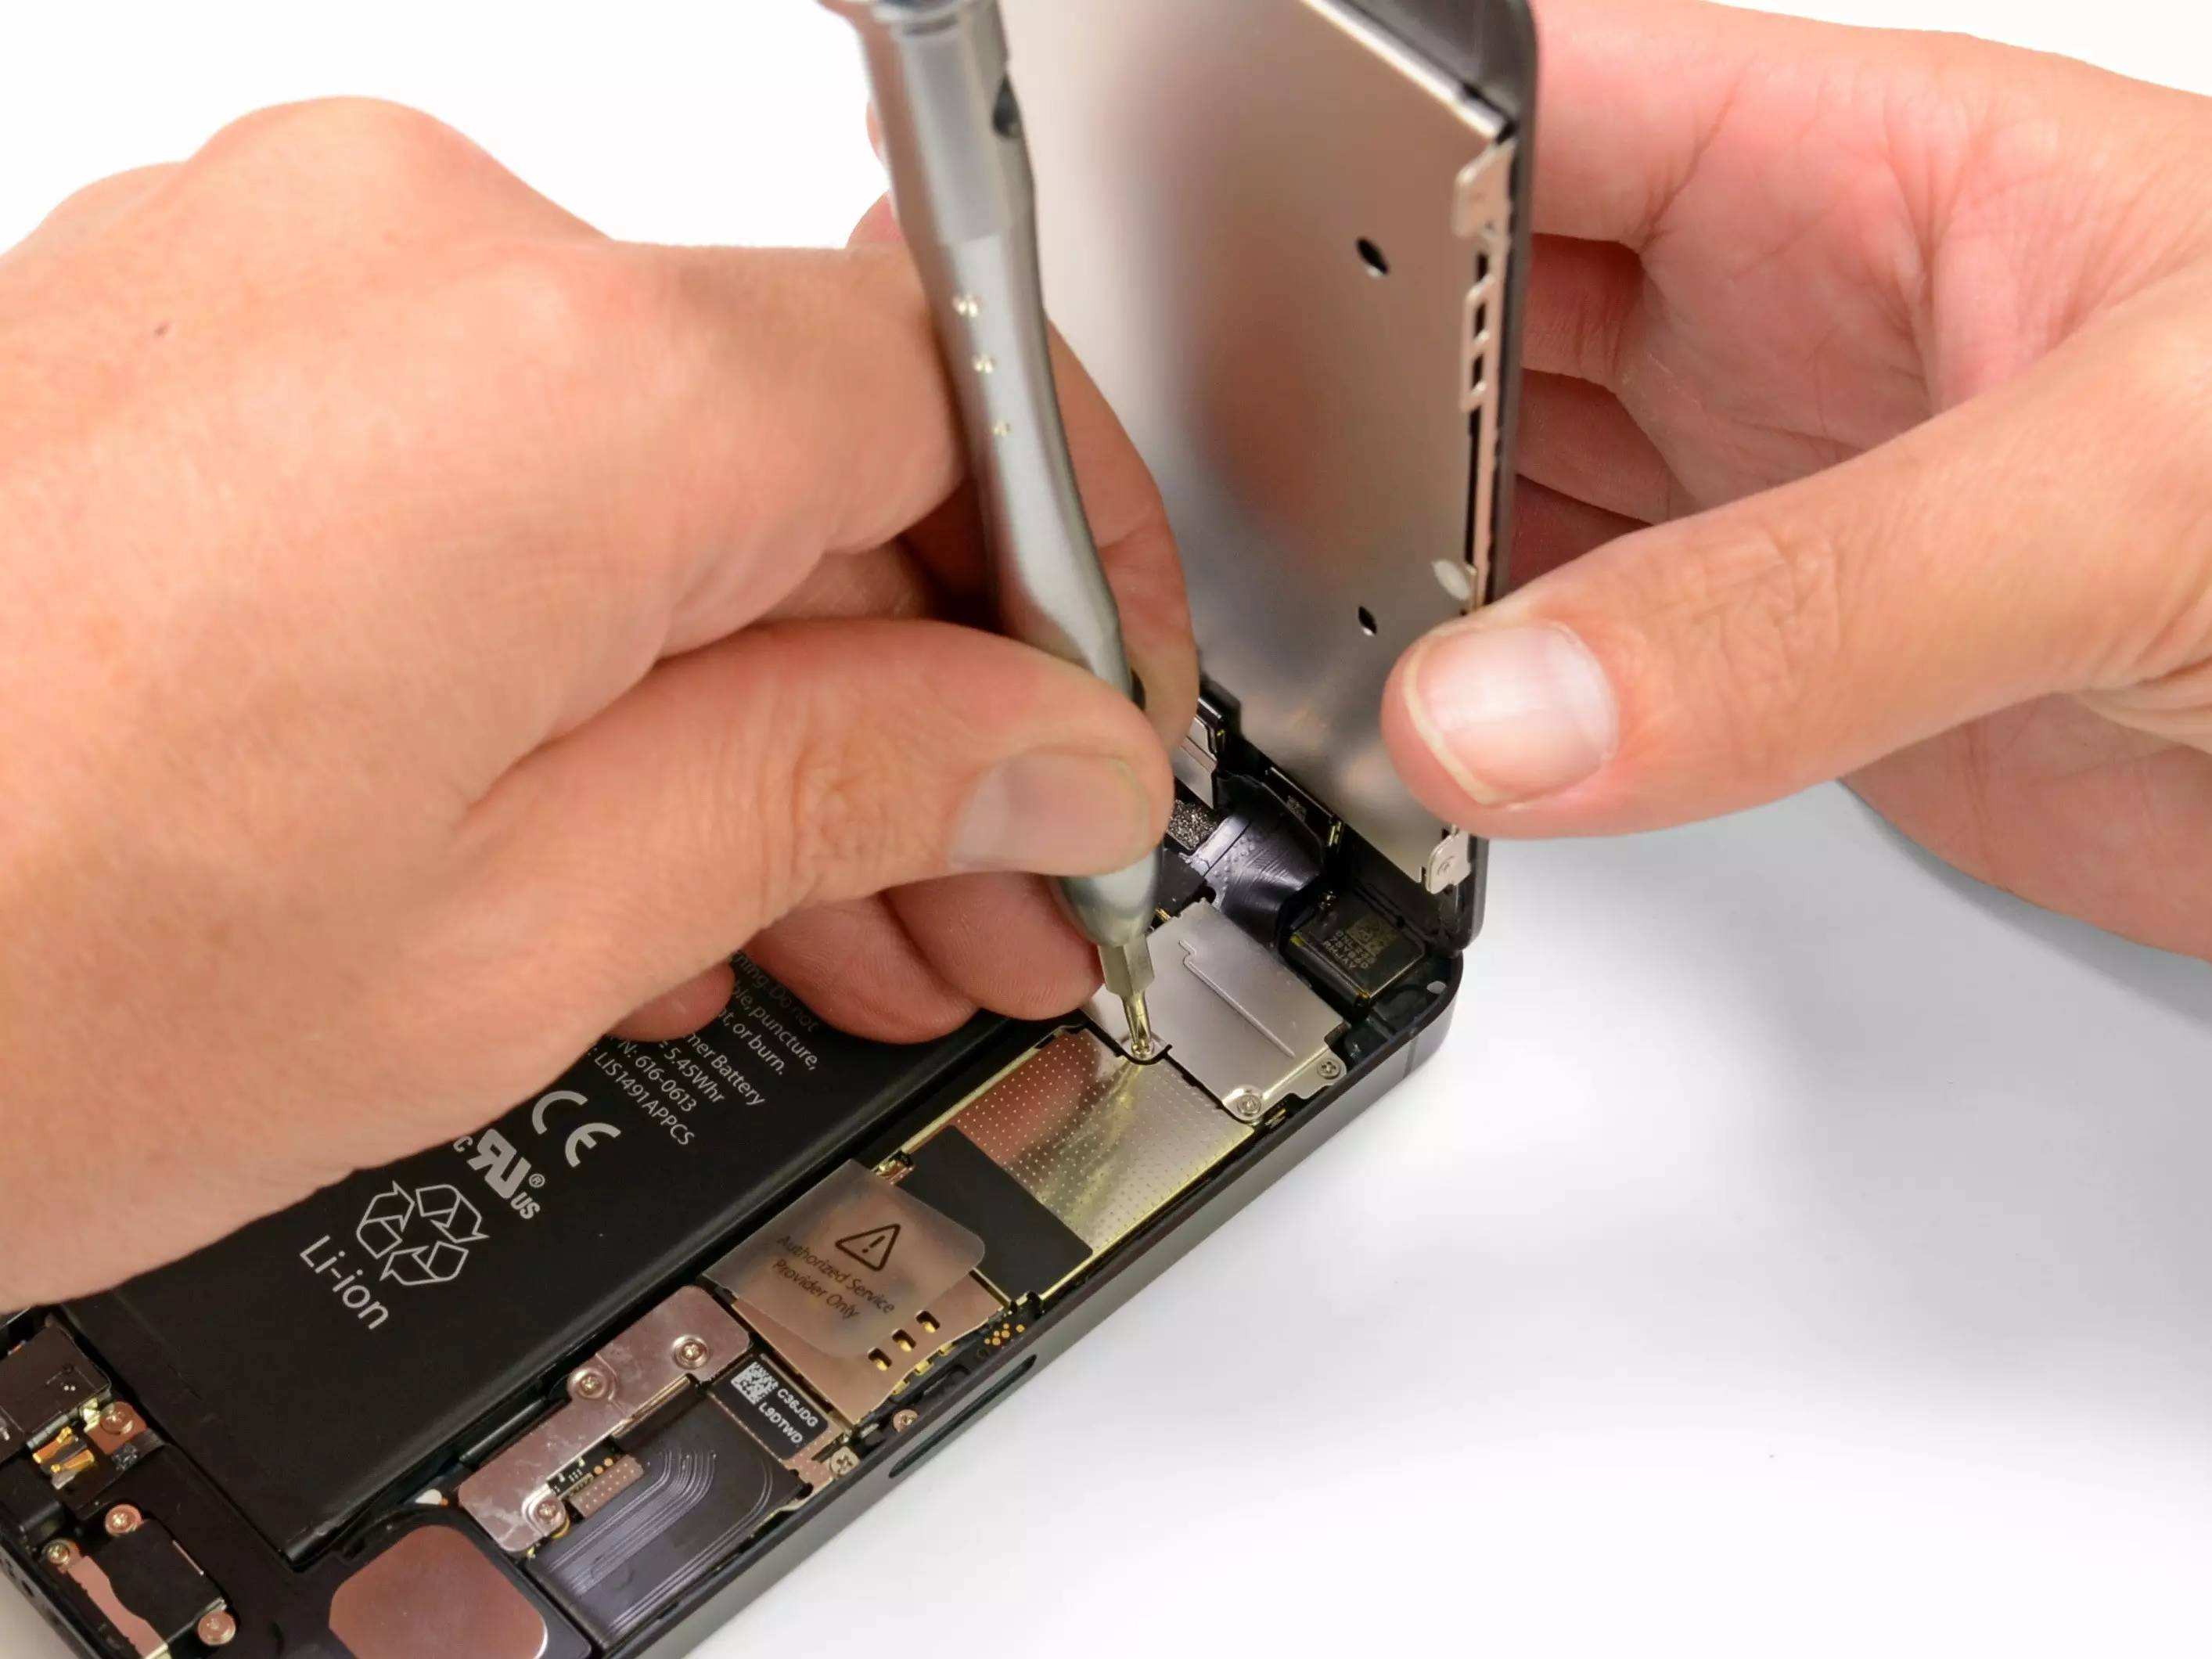 苹果6s听筒坏了该怎么办 苹果售后维修中心热线查询 Iphone综合讨论区论坛 太平洋电脑论坛